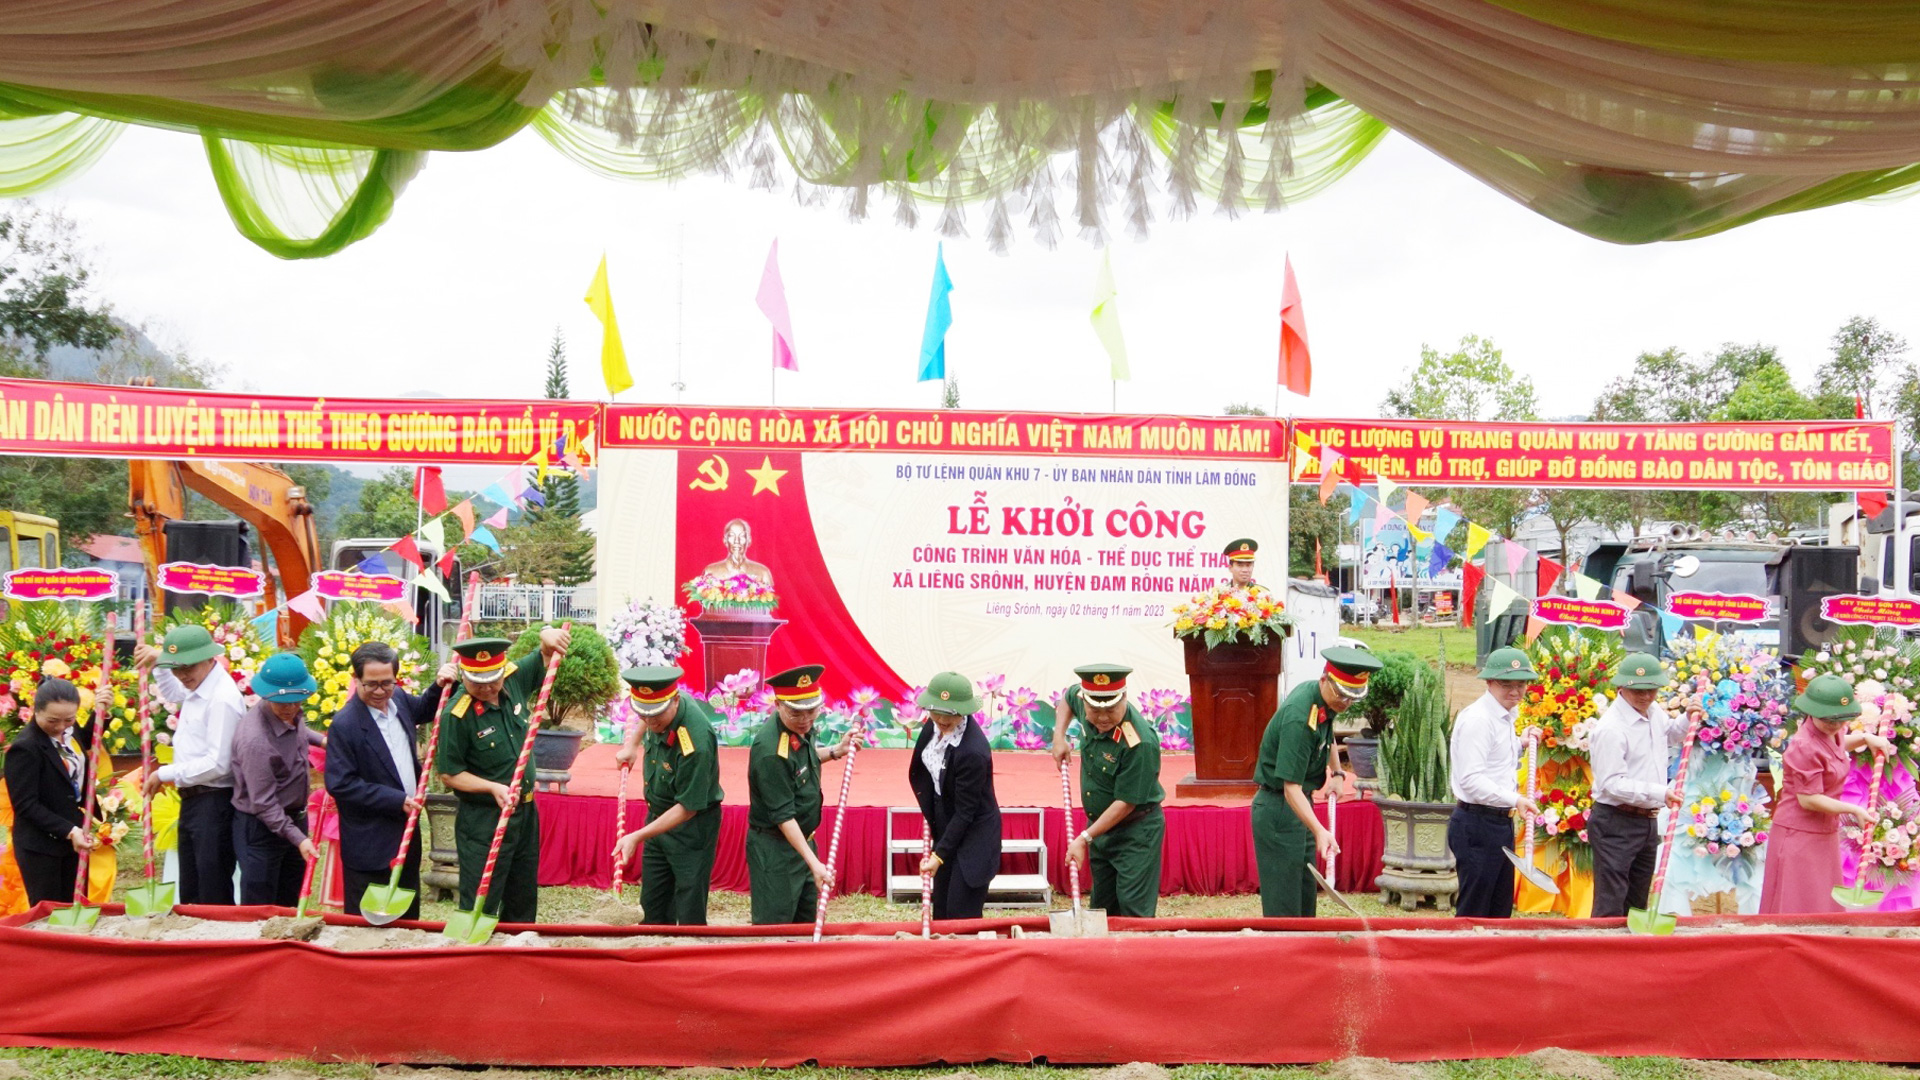 Khởi công xây tặng công trình văn hóa, thể dục thể thao tại huyện Đam Rông